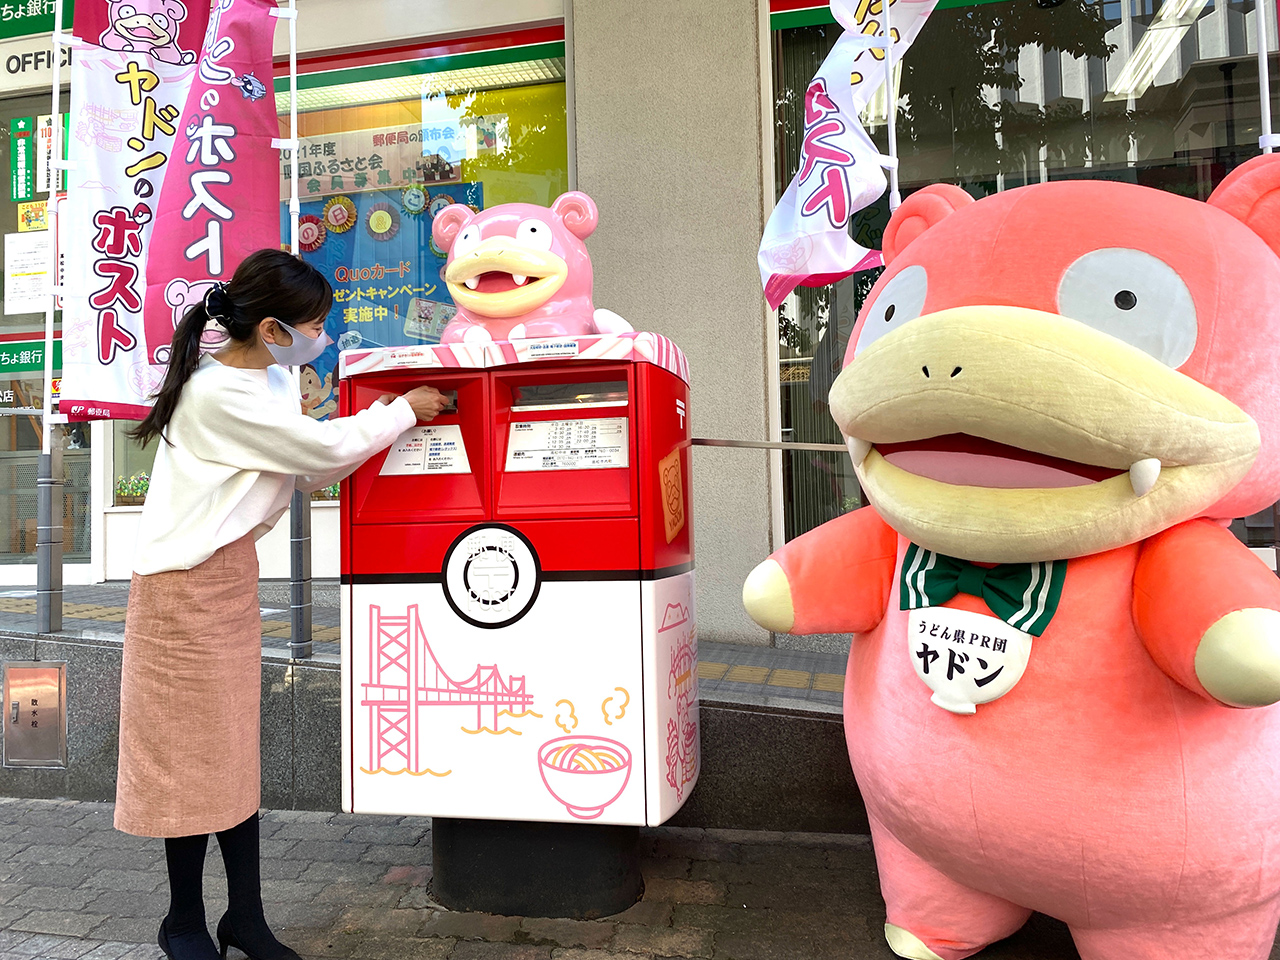 คางาวะ เปิดตัวตู้ไปรษณีย์โปเกมอน "ยาดง (Yadon / Slowpoke)" แห่งแรกของญี่ปุ่น